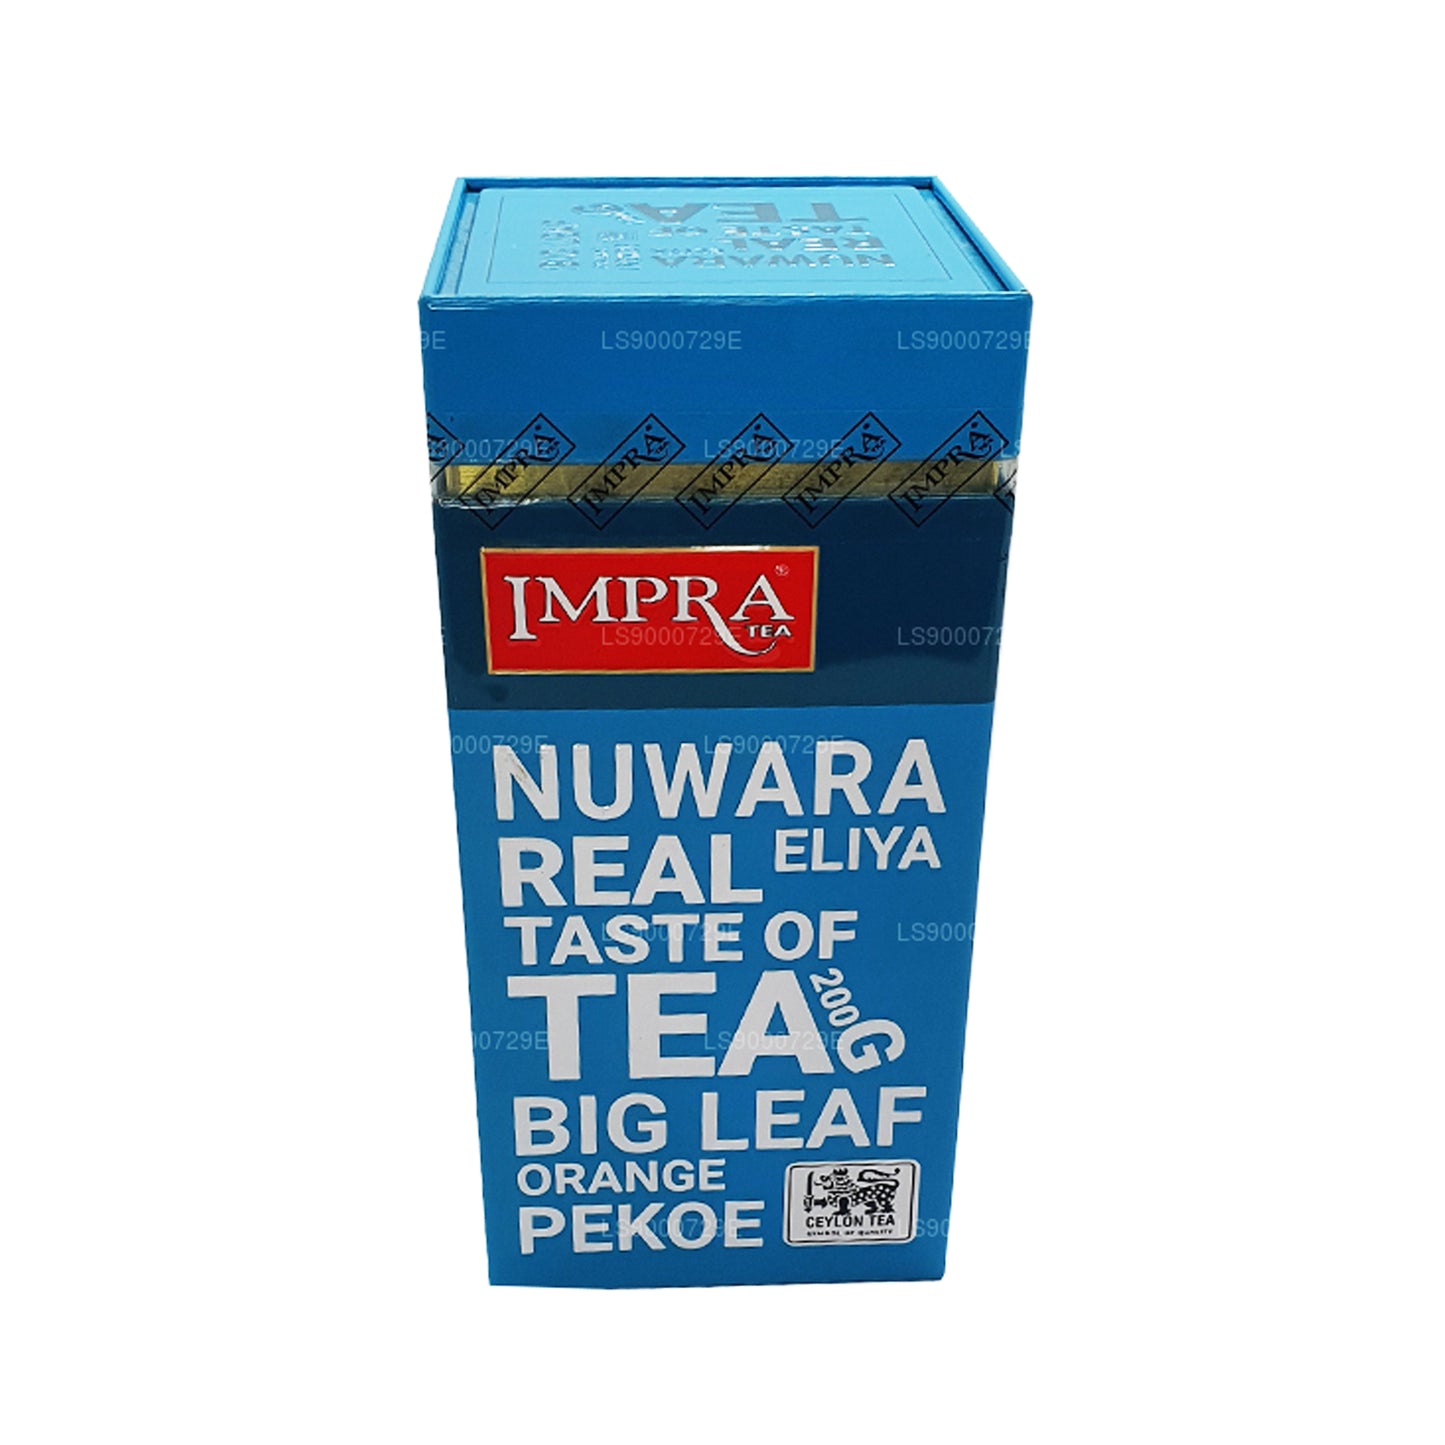 Carrito de carne Impra Nuwara Eliya Big Leaf (200 g)